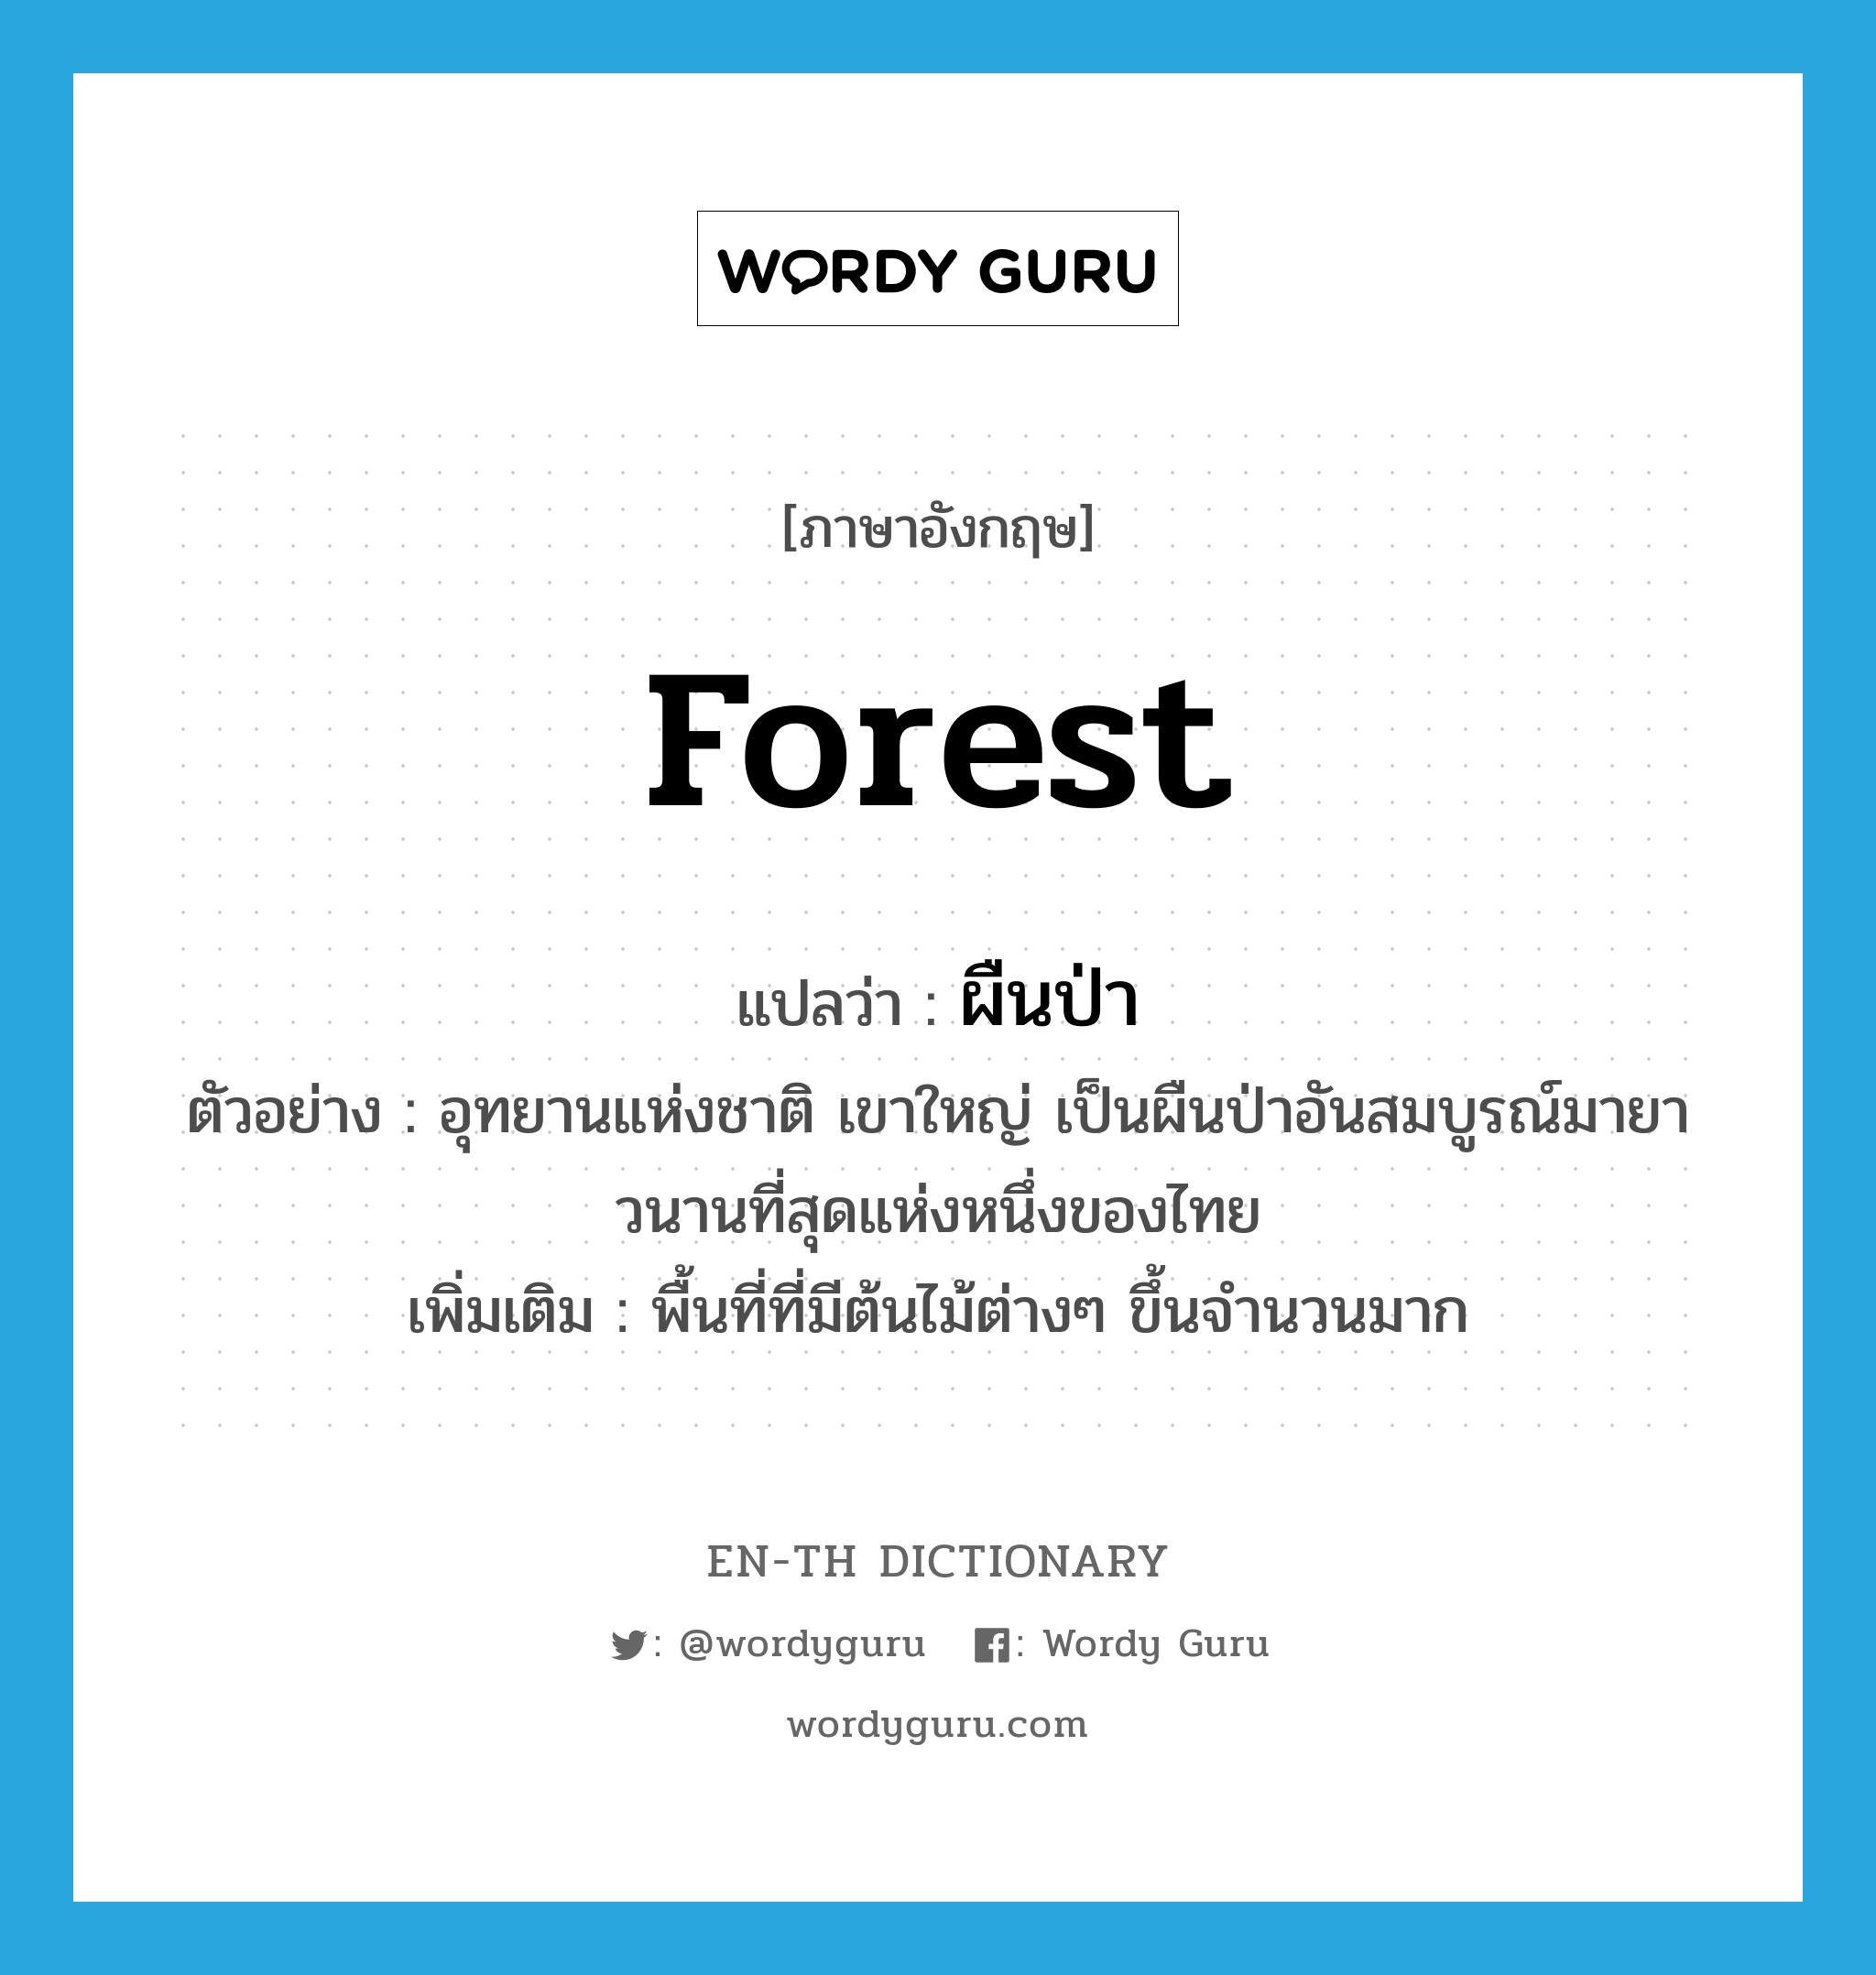 ผืนป่า ภาษาอังกฤษ?, คำศัพท์ภาษาอังกฤษ ผืนป่า แปลว่า forest ประเภท N ตัวอย่าง อุทยานแห่งชาติ เขาใหญ่ เป็นผืนป่าอันสมบูรณ์มายาวนานที่สุดแห่งหนึ่งของไทย เพิ่มเติม พื้นที่ที่มีต้นไม้ต่างๆ ขึ้นจำนวนมาก หมวด N